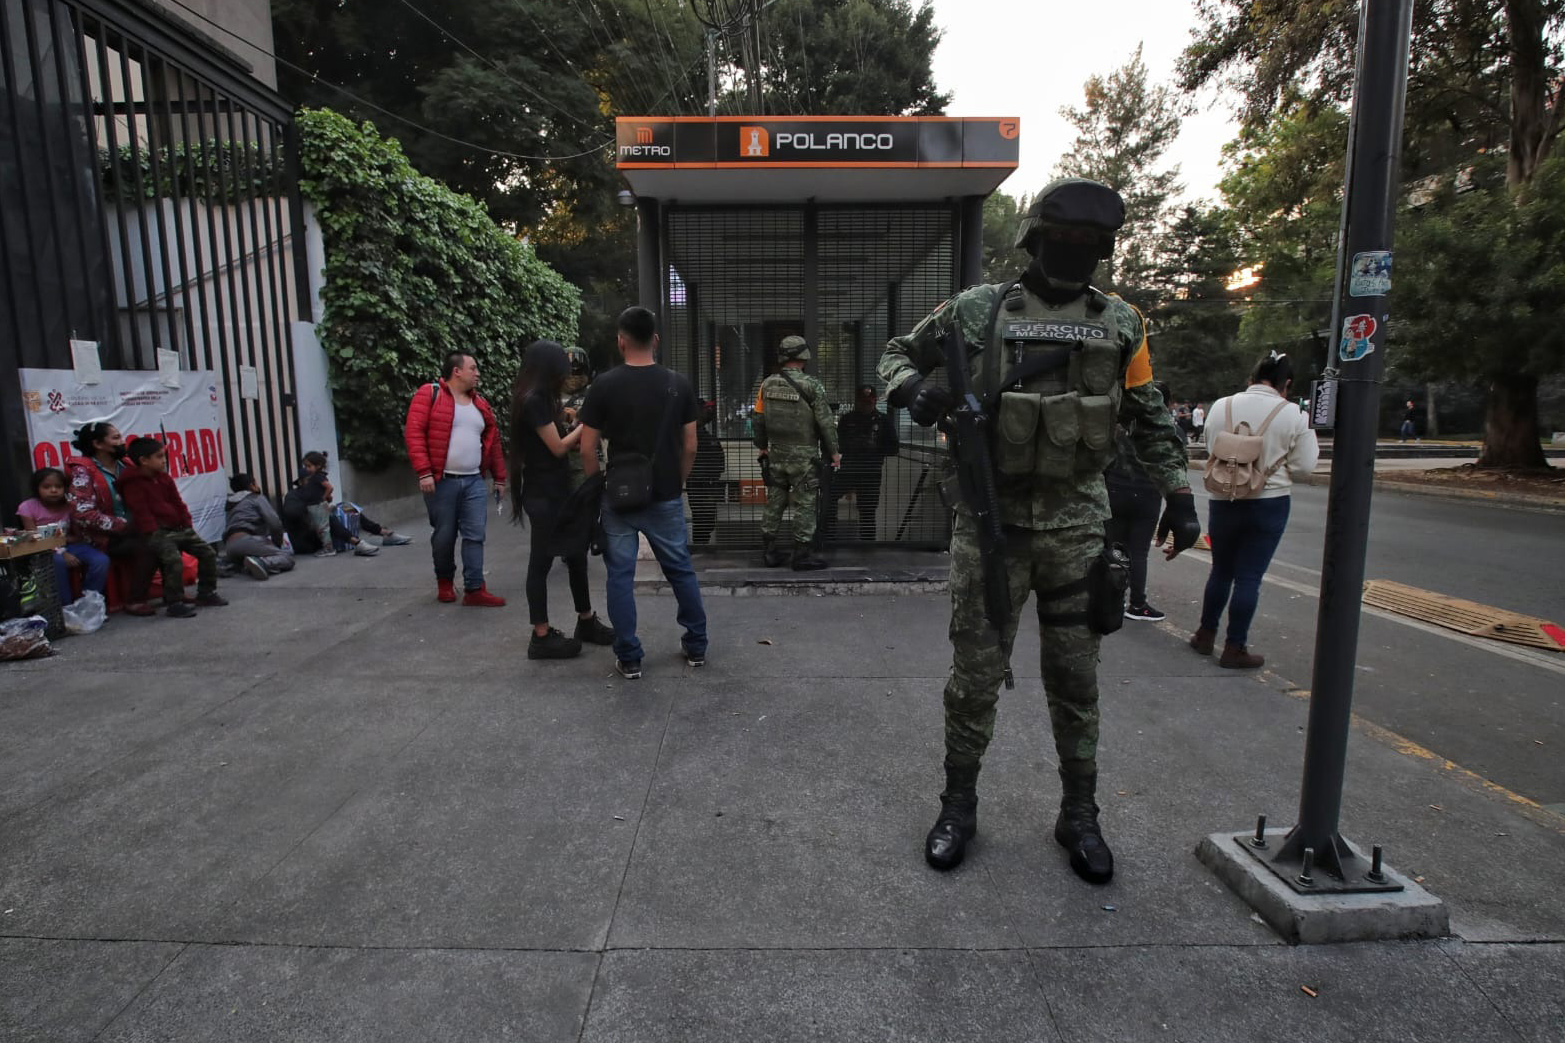 Fiscalía de CDMX investiga incidente en Línea 7 del Metro, participan  peritos en explosivos - El Siglo